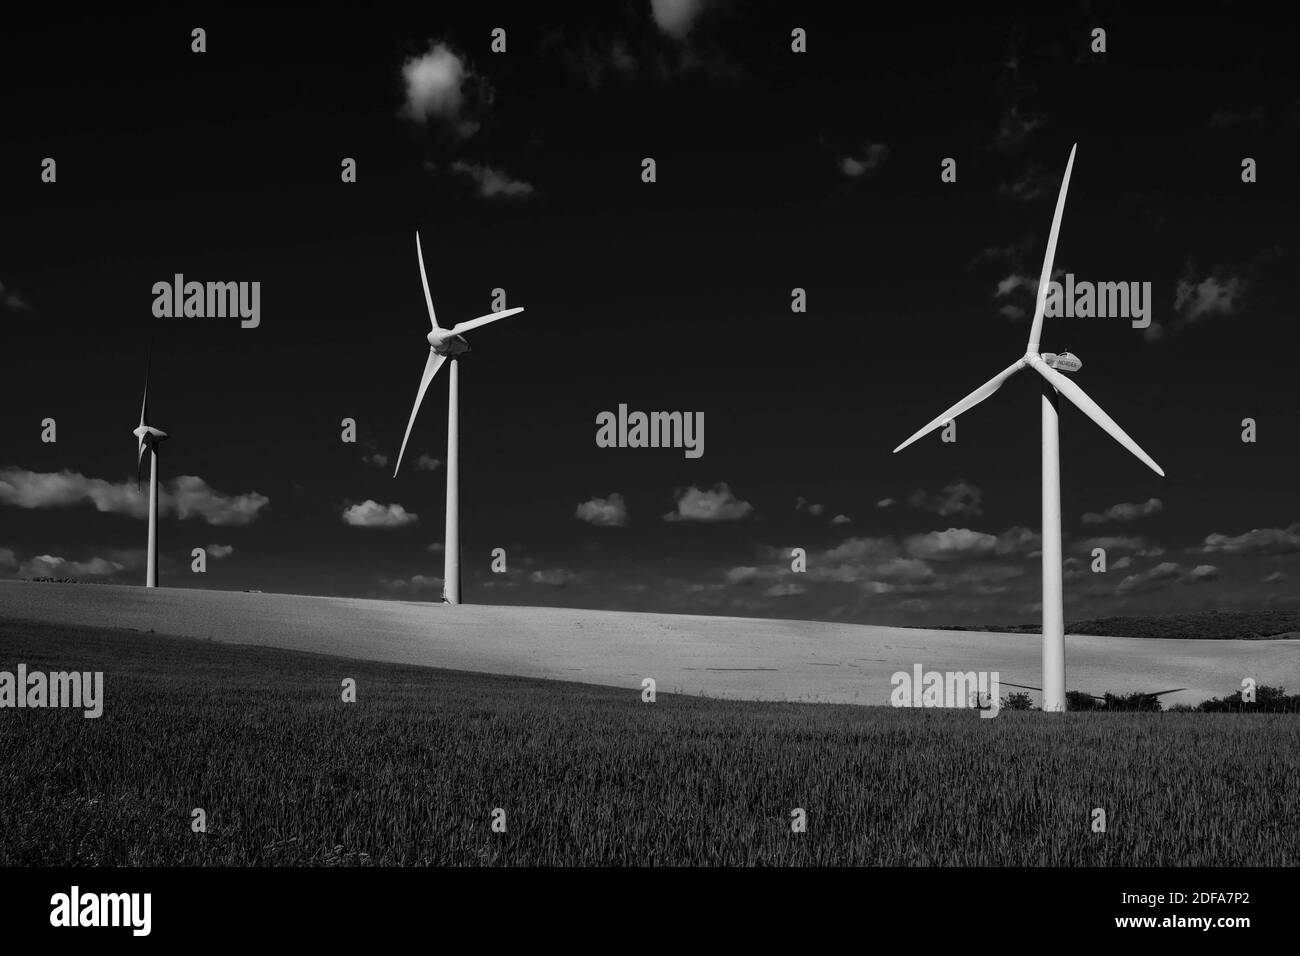 Grafica in bianco e nero. Turbine eoliche nel mezzo di campi di grano. Illustrazione delle centrali eoliche di Lauragais (vicino a Tolosa, Francia meridionale), il 19 maggio 2020. Foto di Patrick Batard/ABACAPRESS.COM Foto Stock